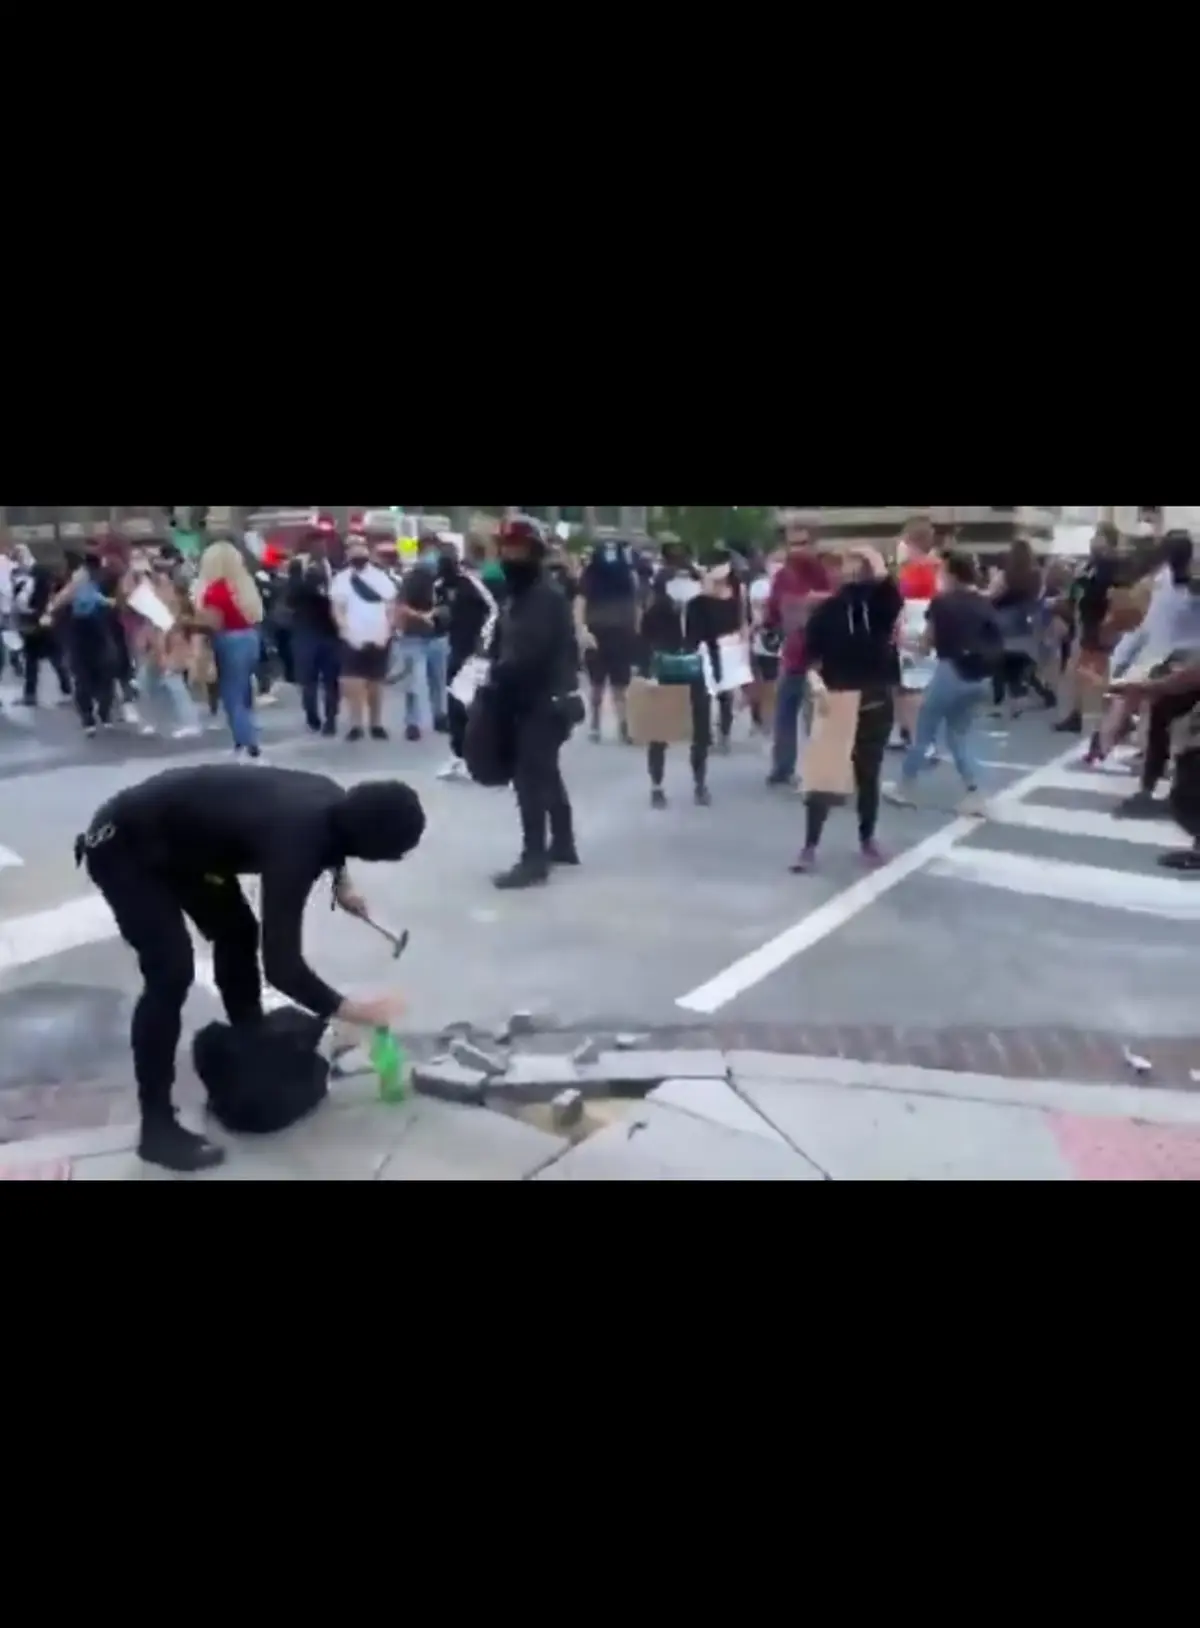 معترضین فردی را که دست به تخریب اموال عمومی می زند ،  حین اعتراض تحویل پلیس میدهند.+فیلم